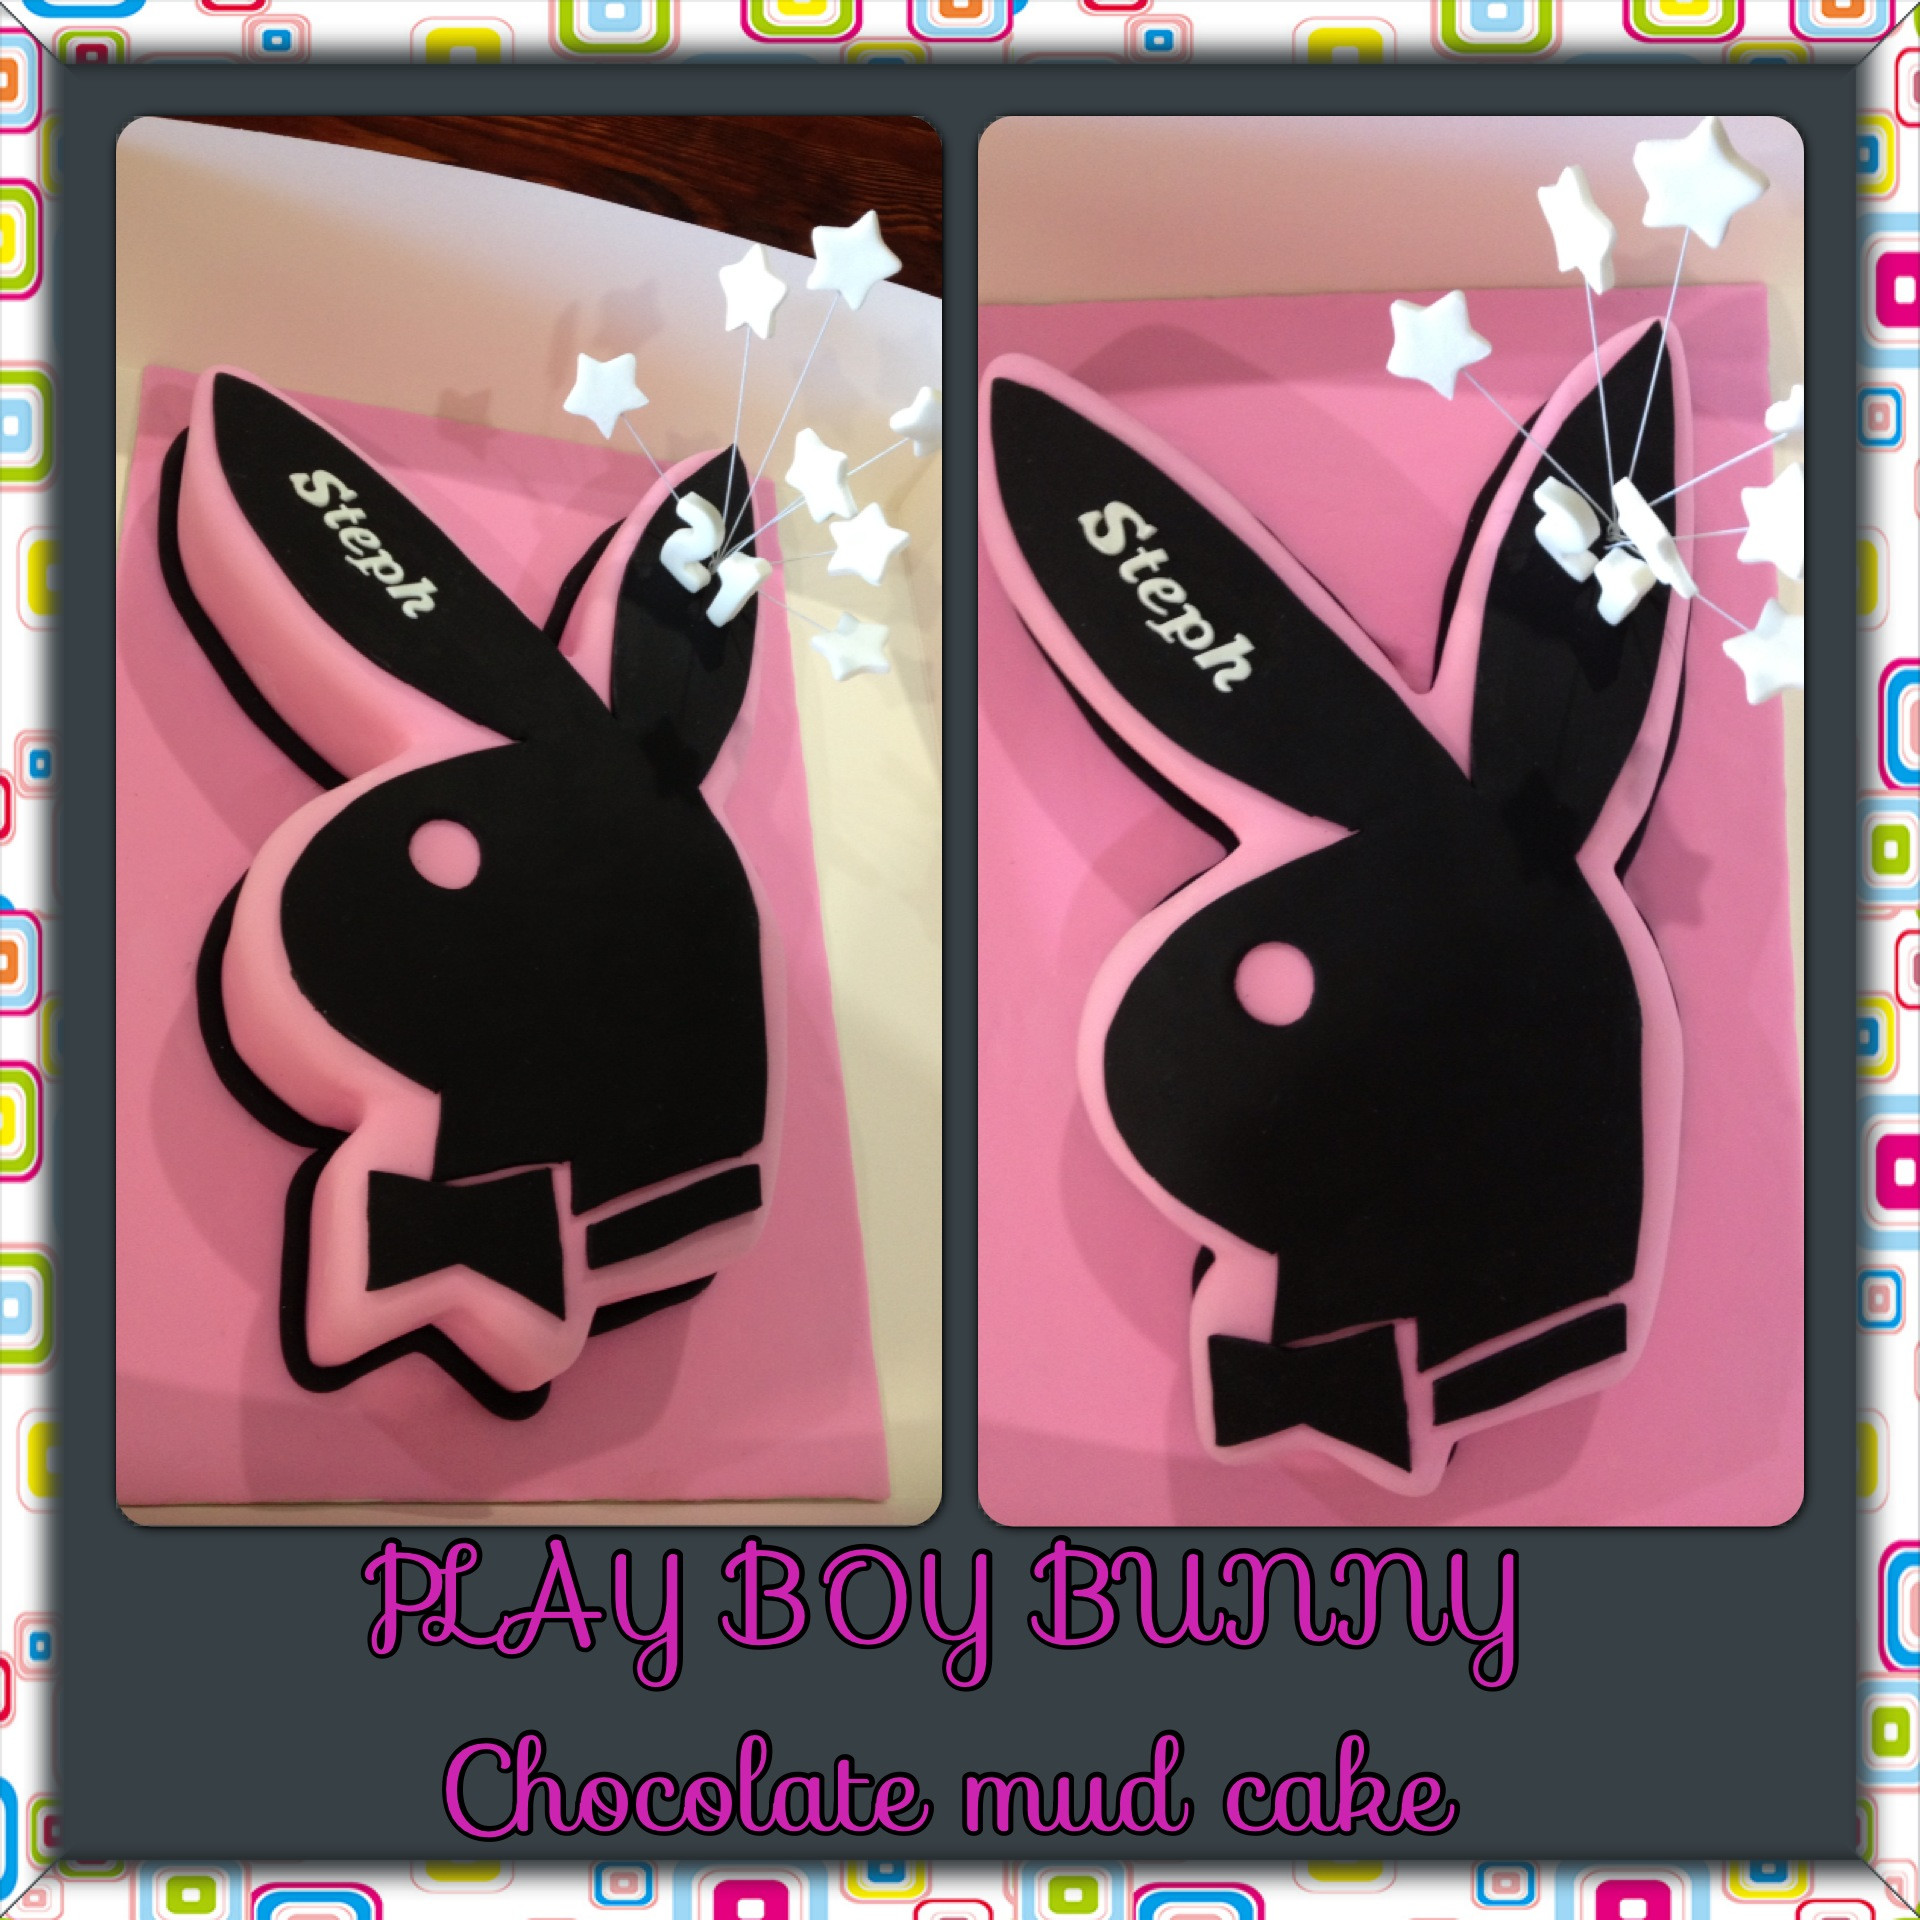 1920x1920 Play boy bunny